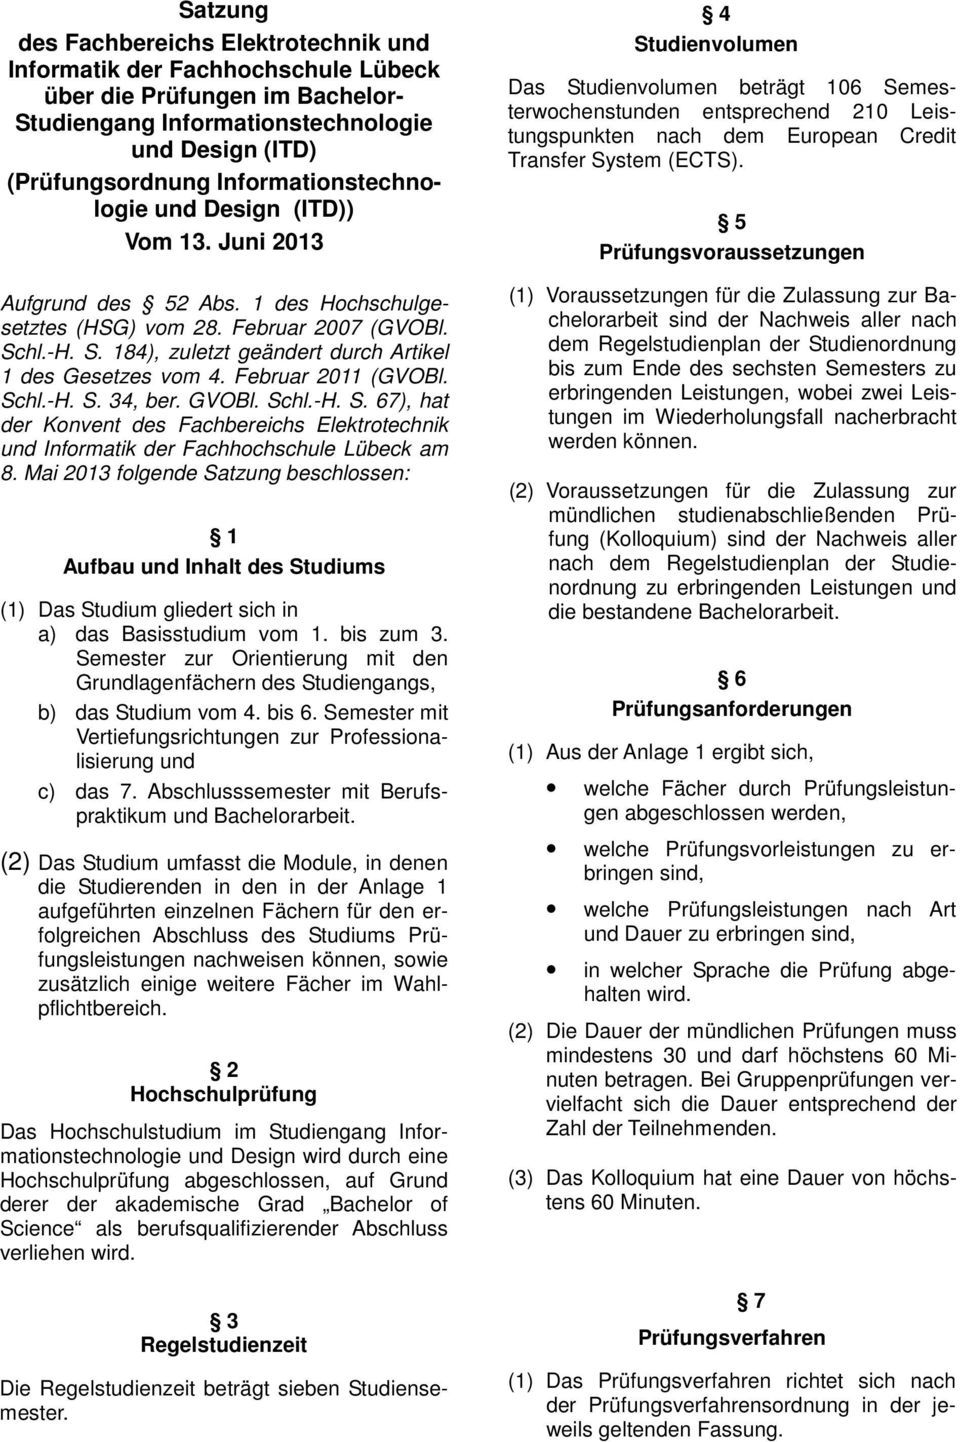 hl.-H. S. 184), zuletzt geändert durch Artikel 1 des Gesetzes vom 4. Februar 2011 (GVOBl. Schl.-H. S. 34, ber. GVOBl. Schl.-H. S. 67), hat der Konvent des Fachbereichs Elektrotechnik und Informatik der Fachhochschule Lübeck am 8.